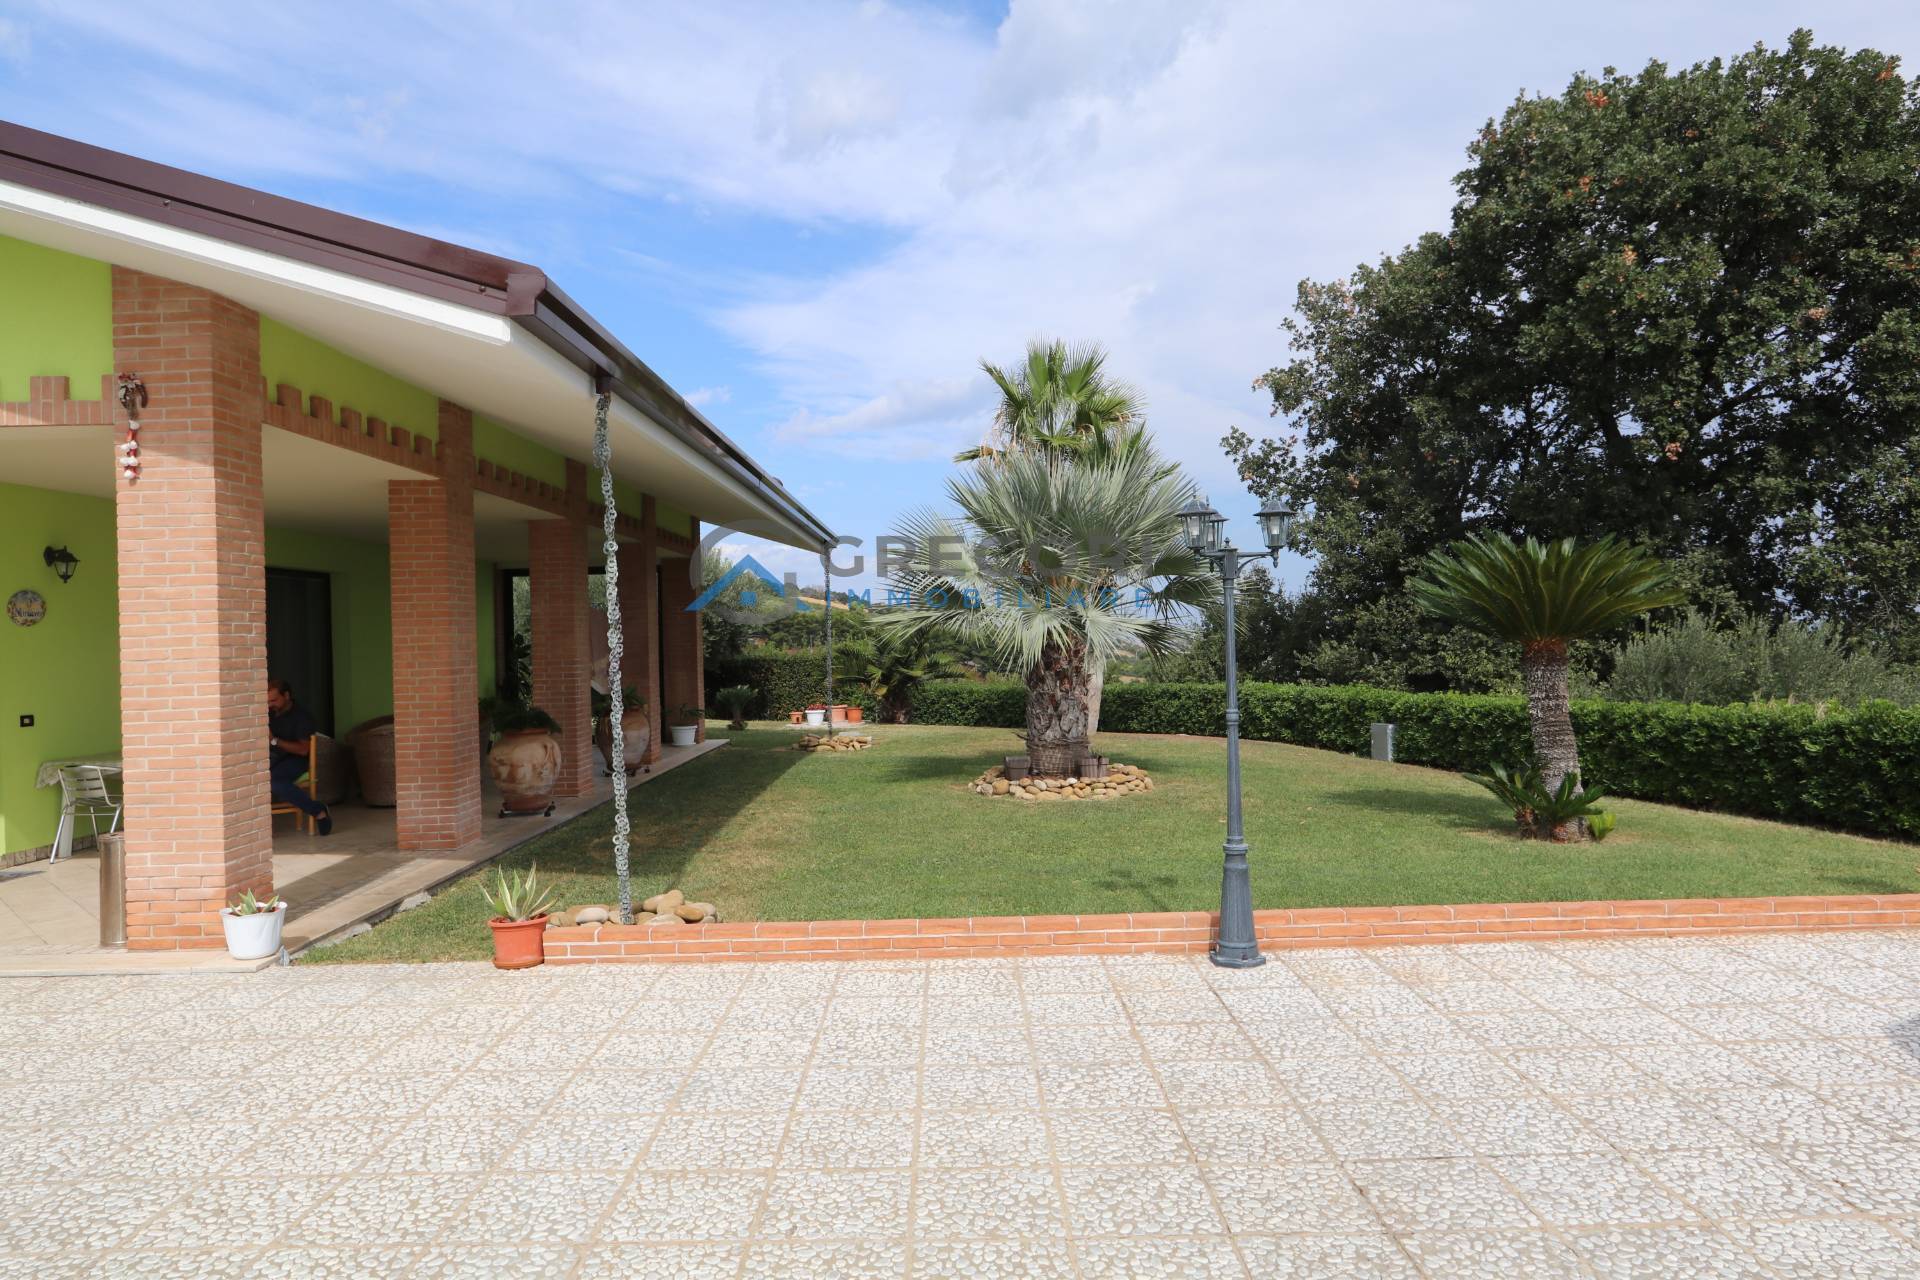 Villa in vendita a Martinsicuro, 10 locali, prezzo € 700.000 | PortaleAgenzieImmobiliari.it